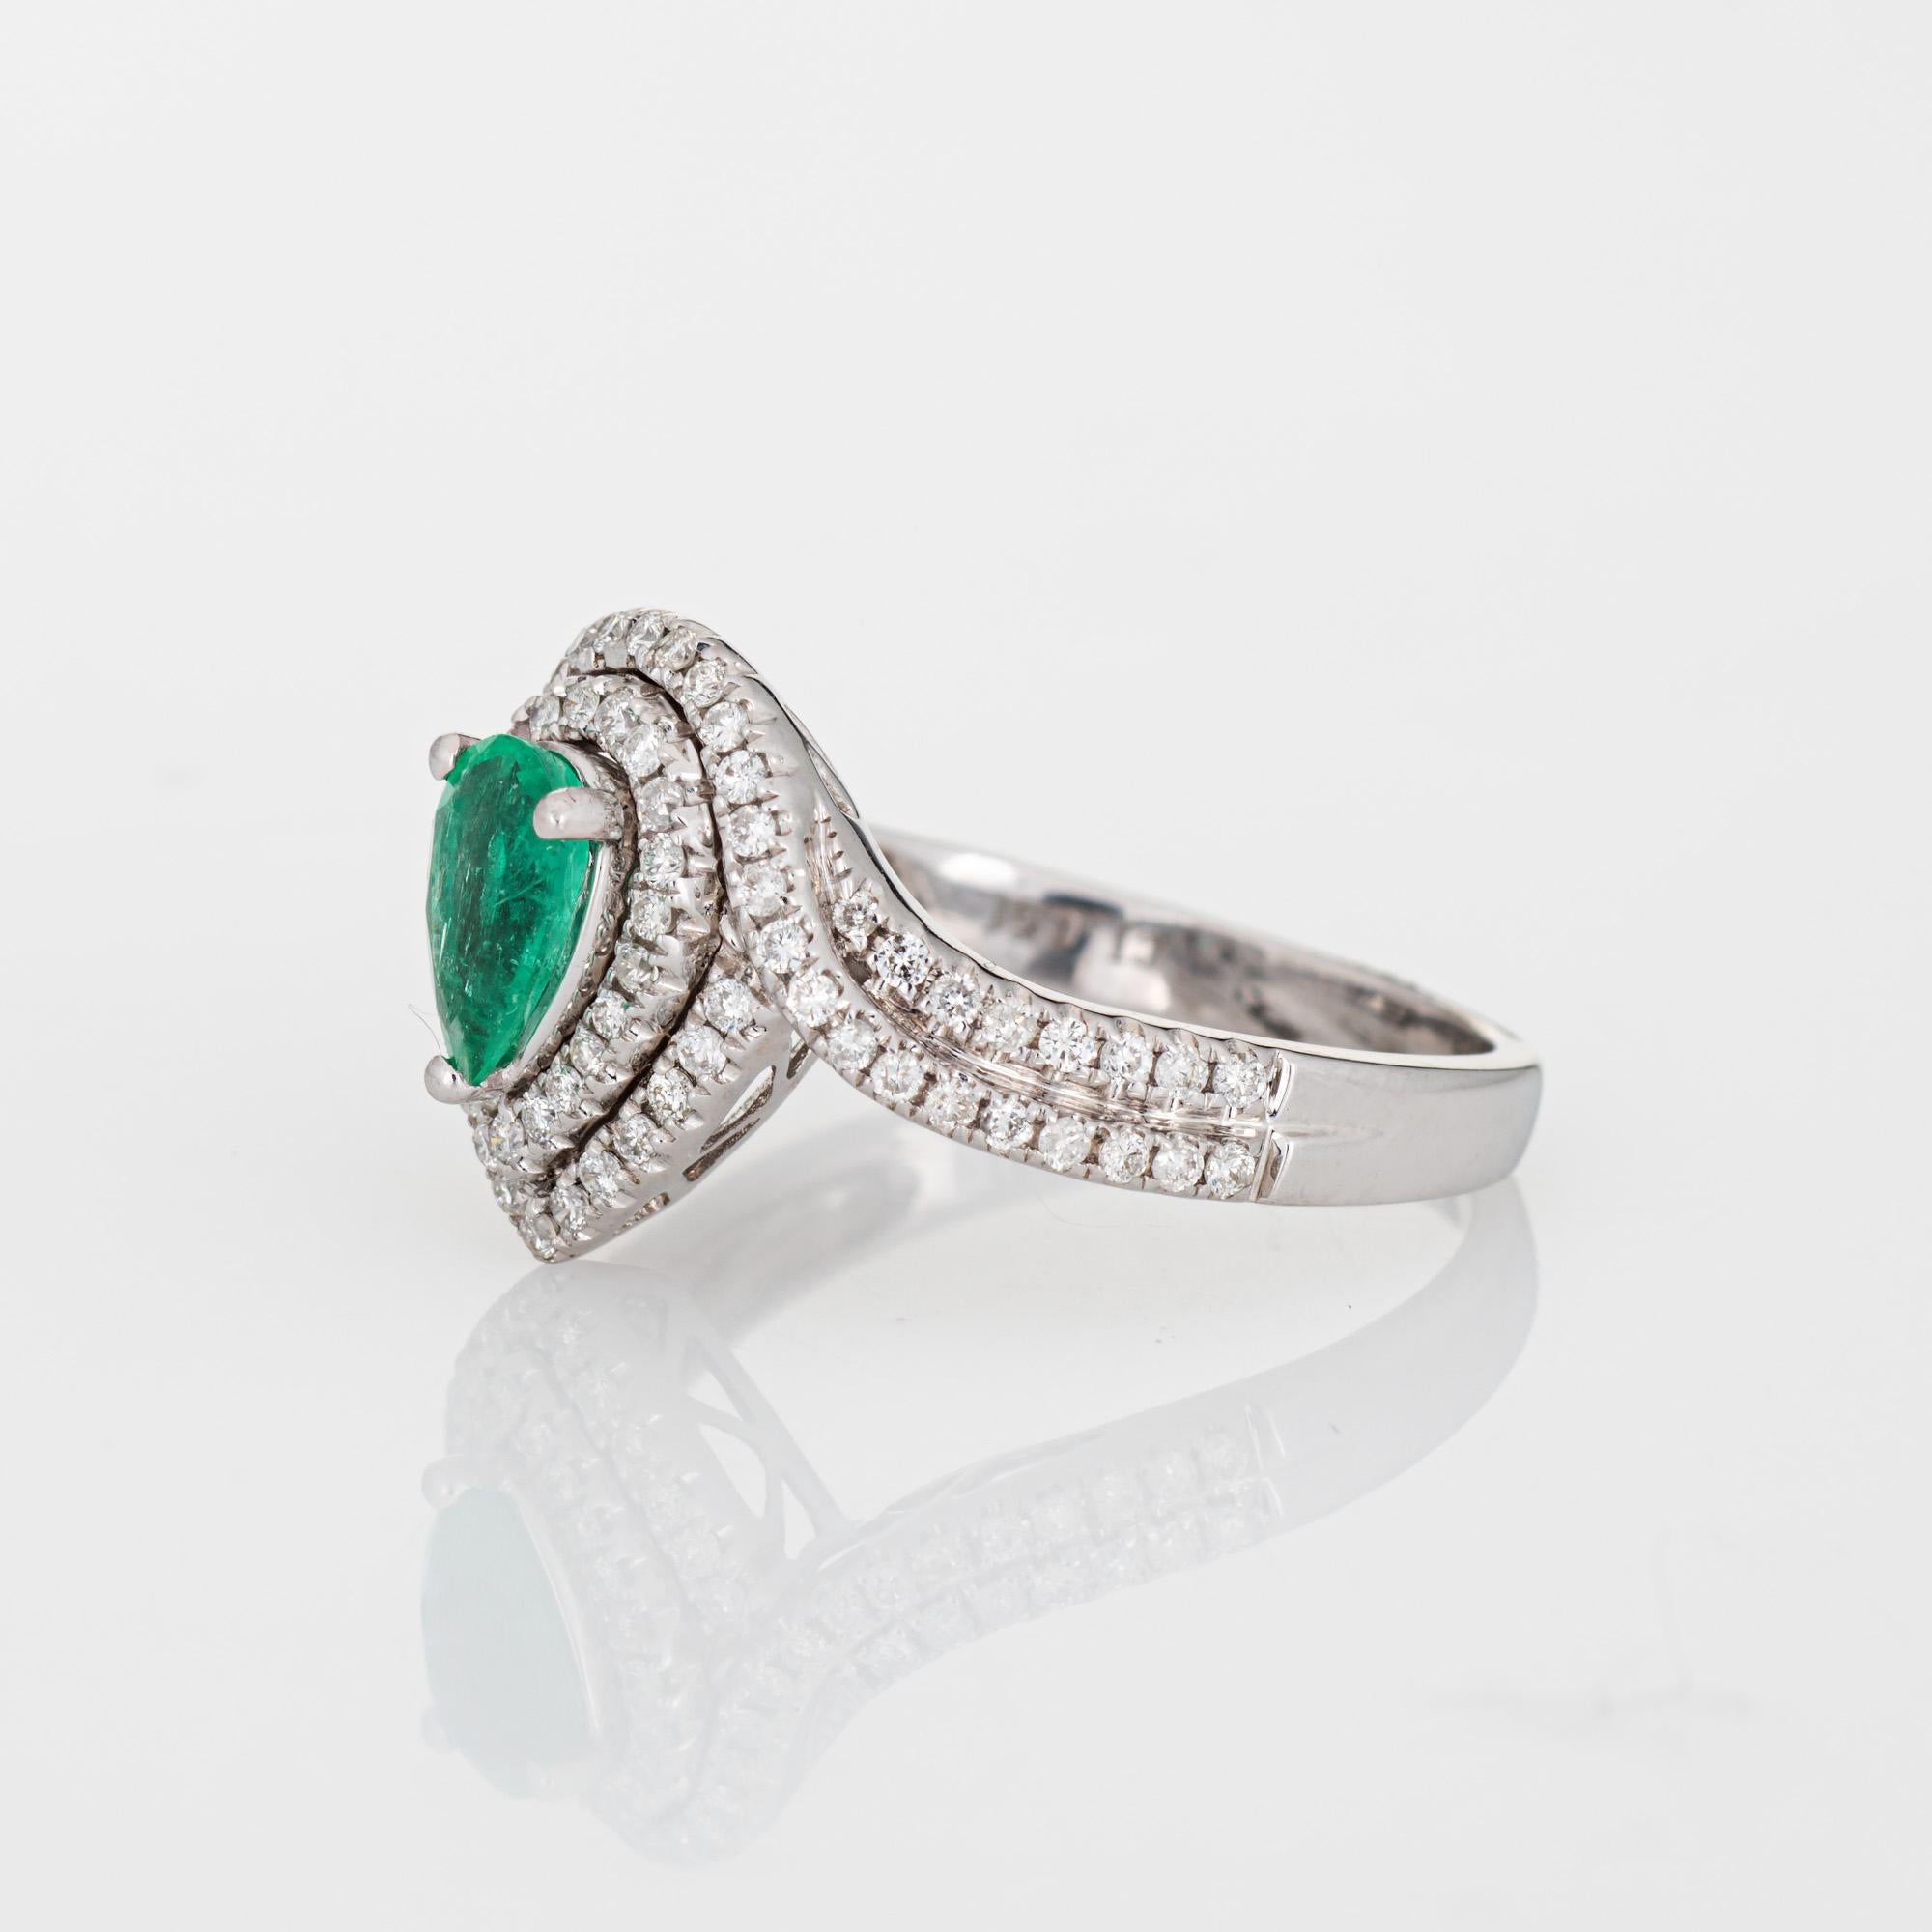 Pear Cut Emerald Diamond Ring Estate 14k White Gold Pear Halo Fine Jewelry For Sale